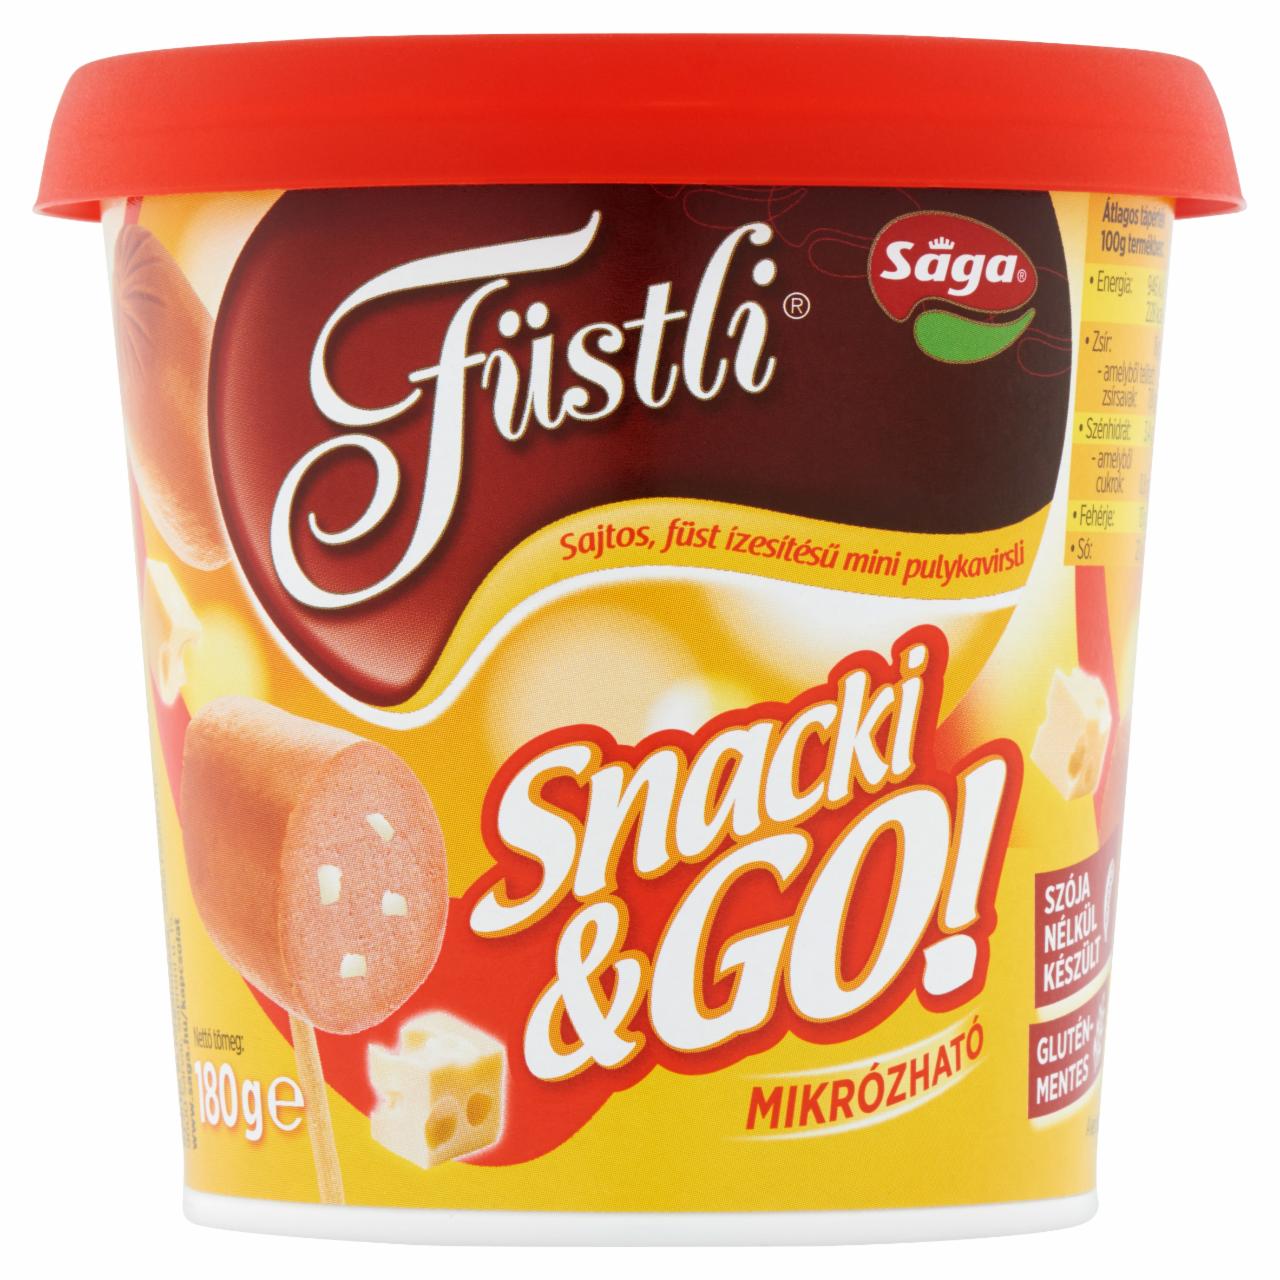 Képek - Sága Füstli Snacki & Go! sajtos, füst ízesítésű mini pulykavirsli 180 g